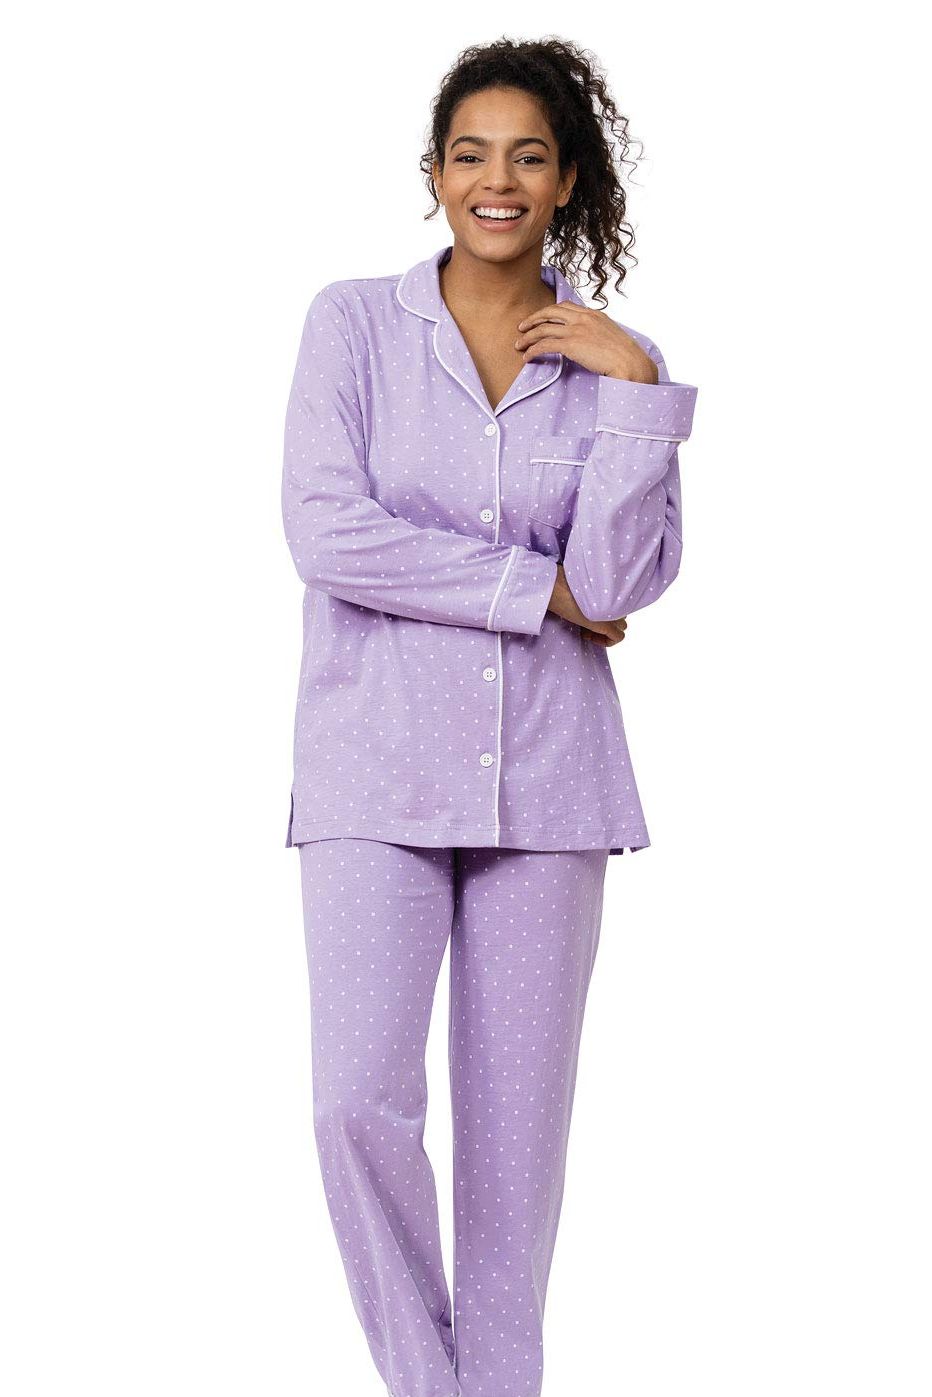 Buy PajamaGram Womens Pajamas - Button Down Pajamas For Women